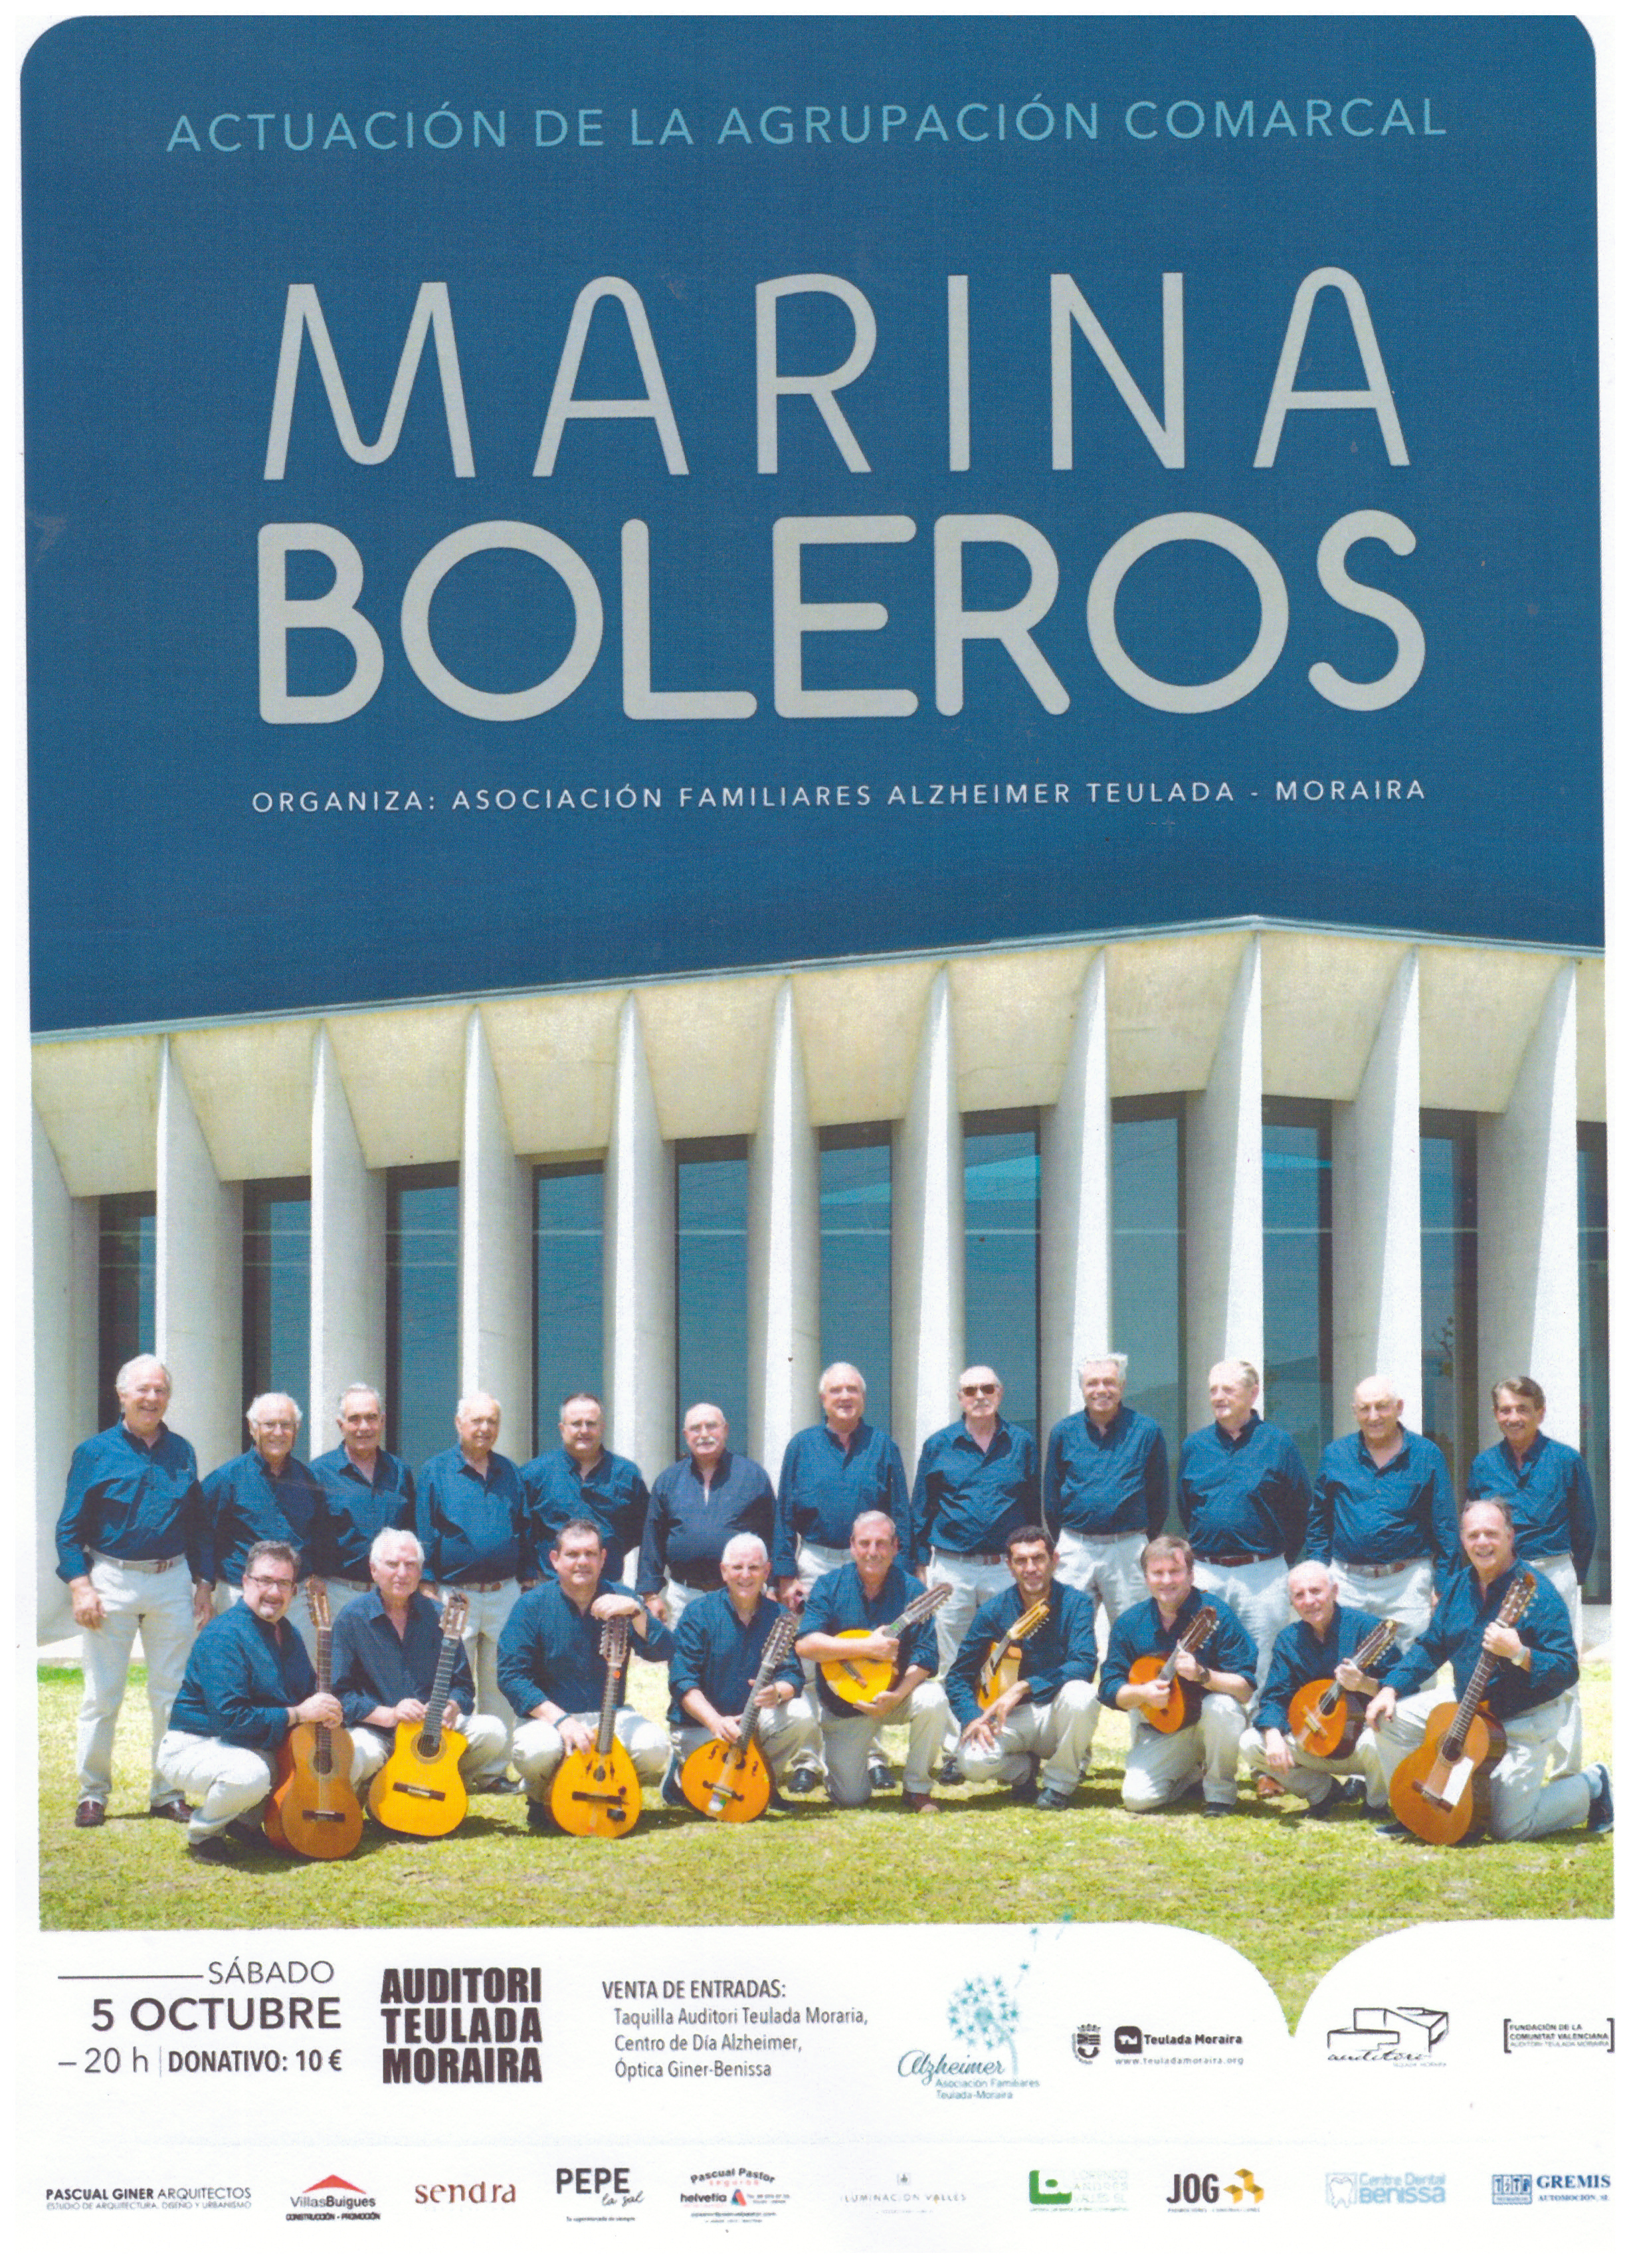 Actuaión de la agrupación comarcal MARINA BOLEROS